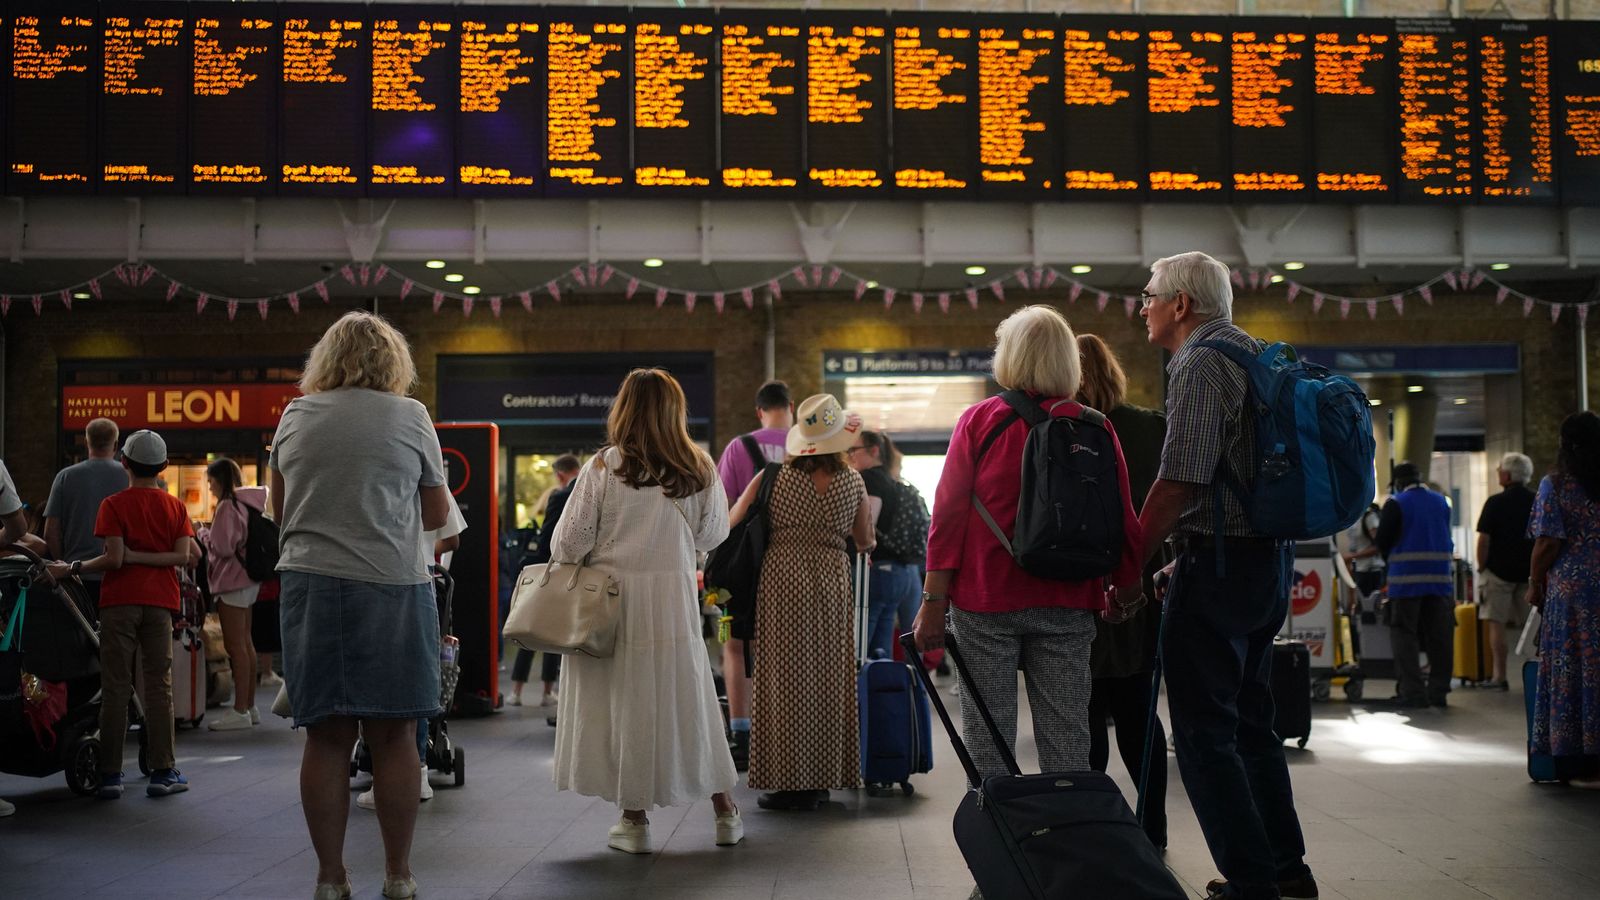 Grèves ferroviaires: Boris Johnson va condamner les syndicats et appeler à un «compromis raisonnable» alors que le chaos des voyages se profile |  Actualité politique